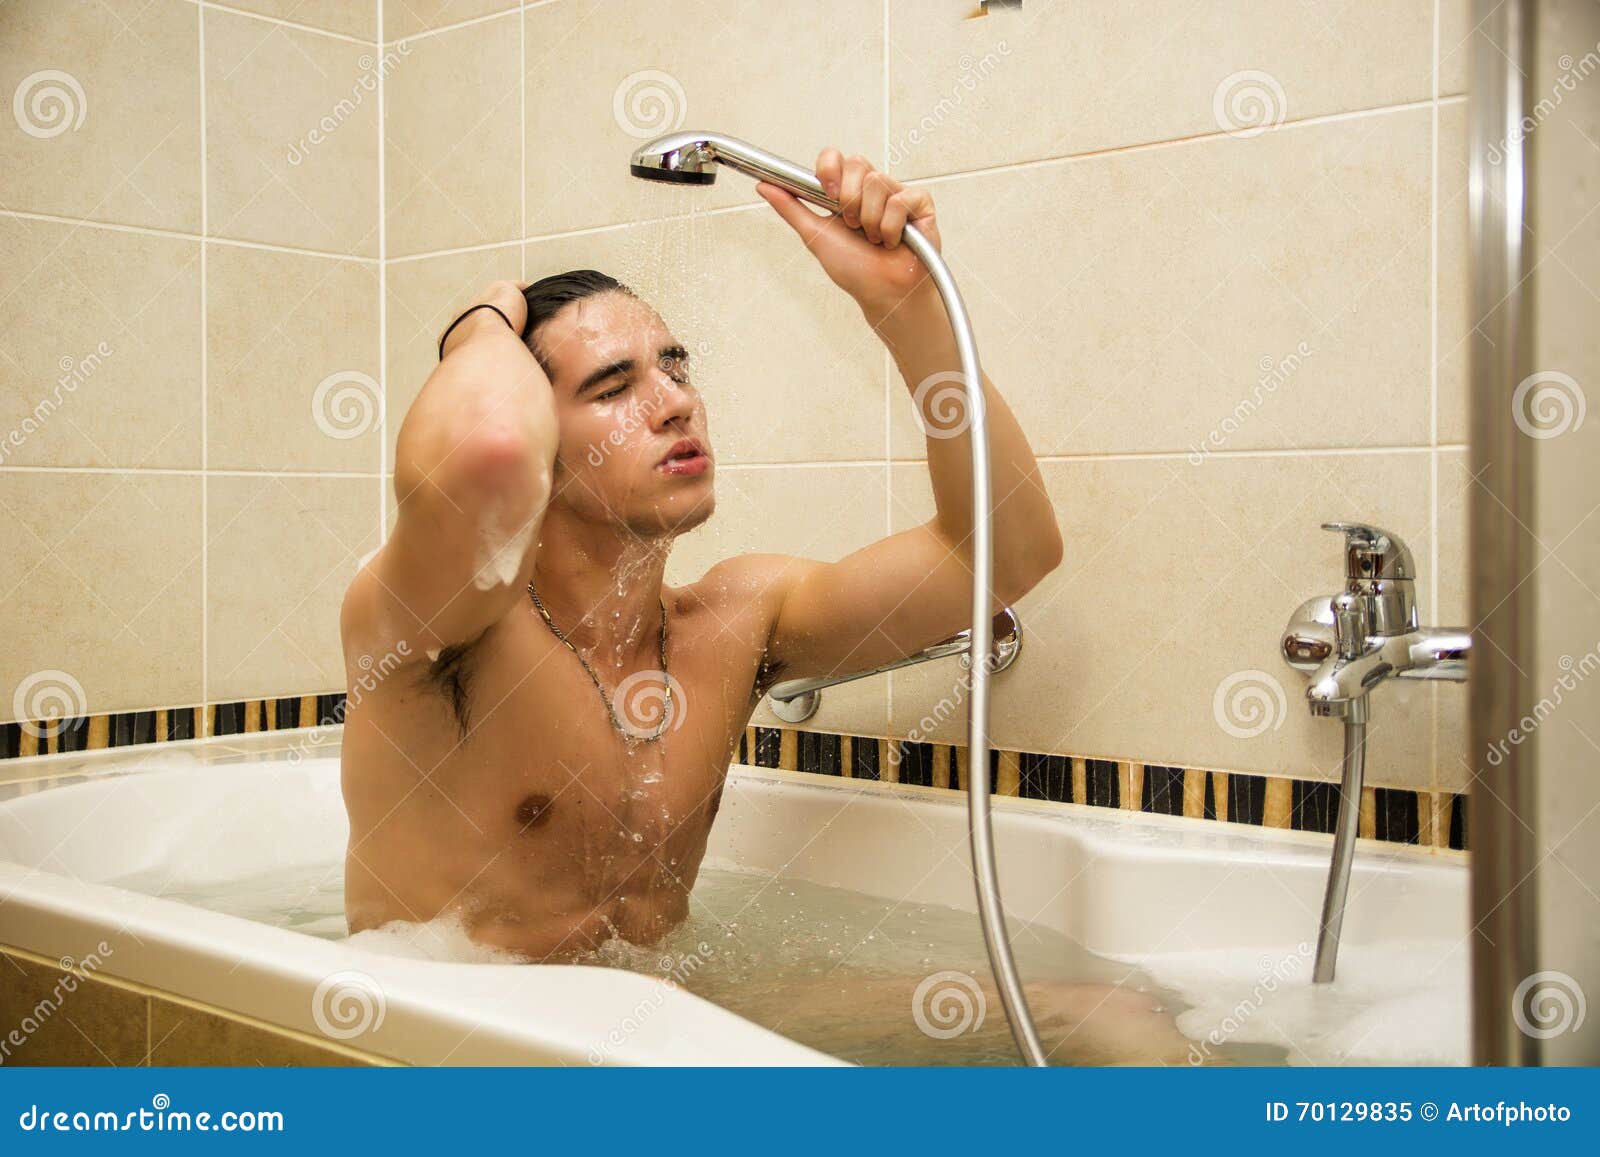 Men Having Sex In The Bathtub 32